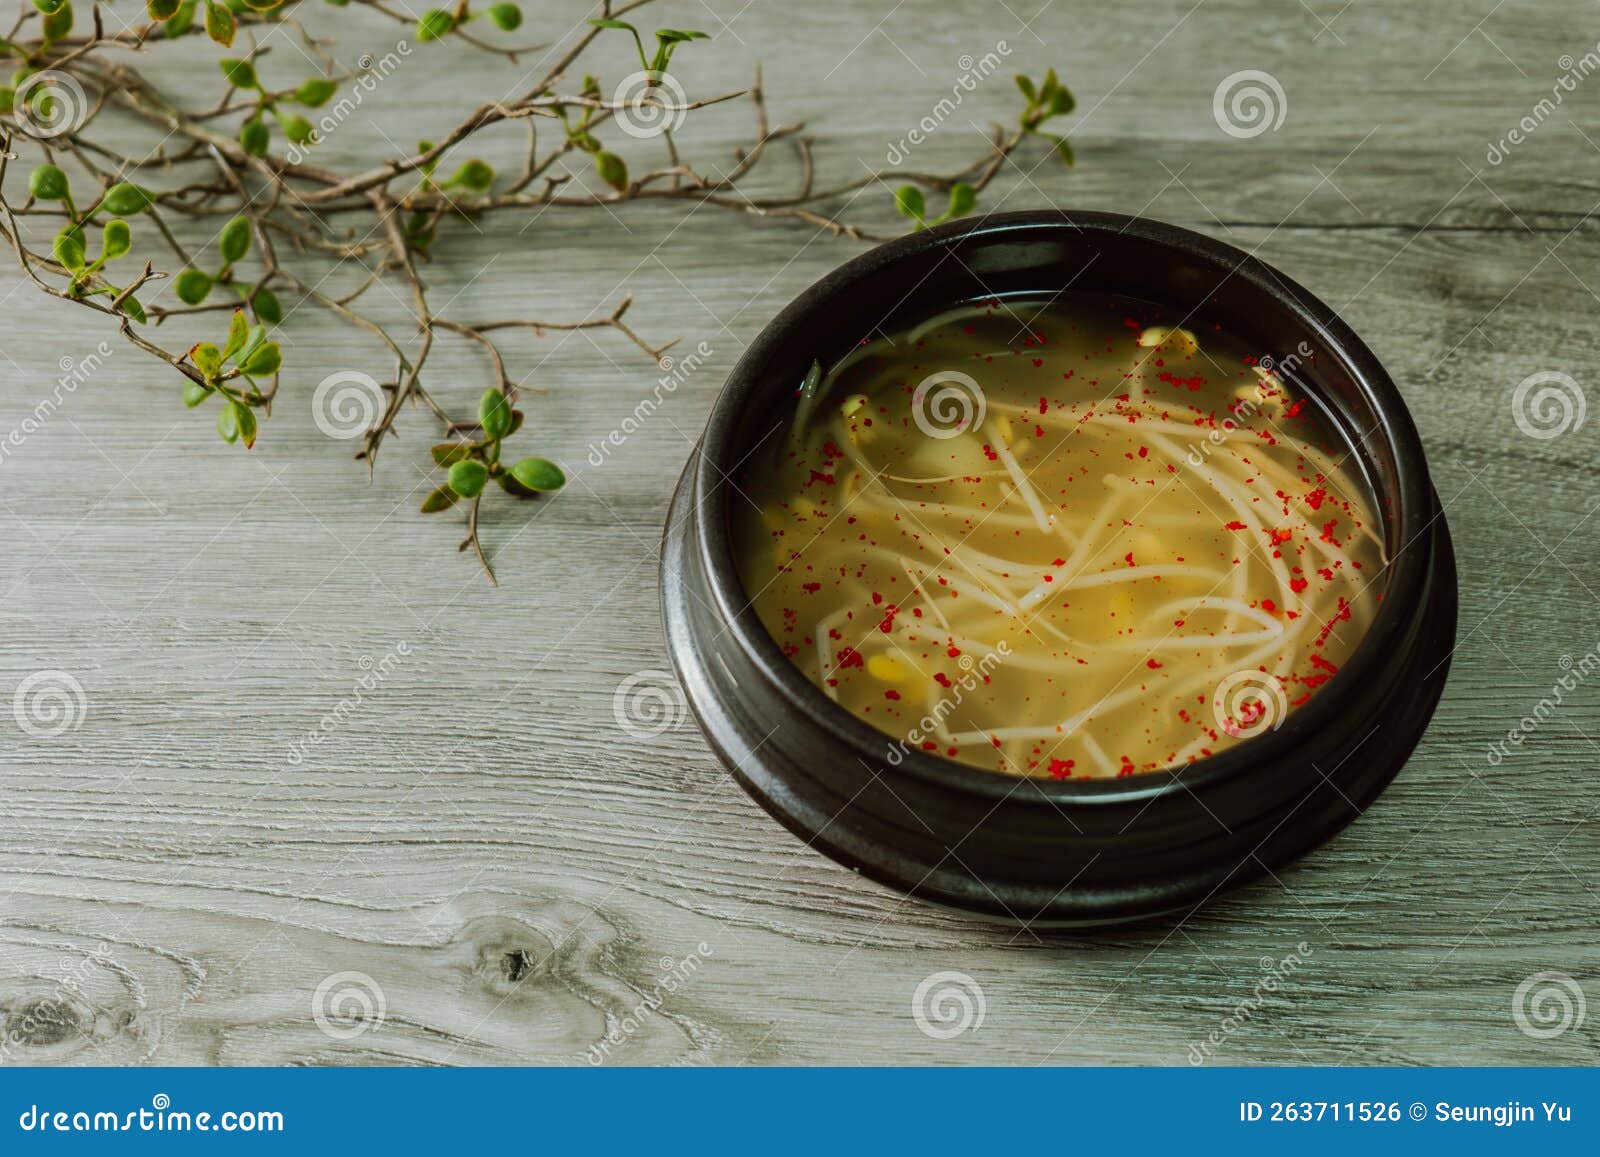 Kongnamulguk Koreanische Bohnensprosssuppe Stockfoto - Bild von ...